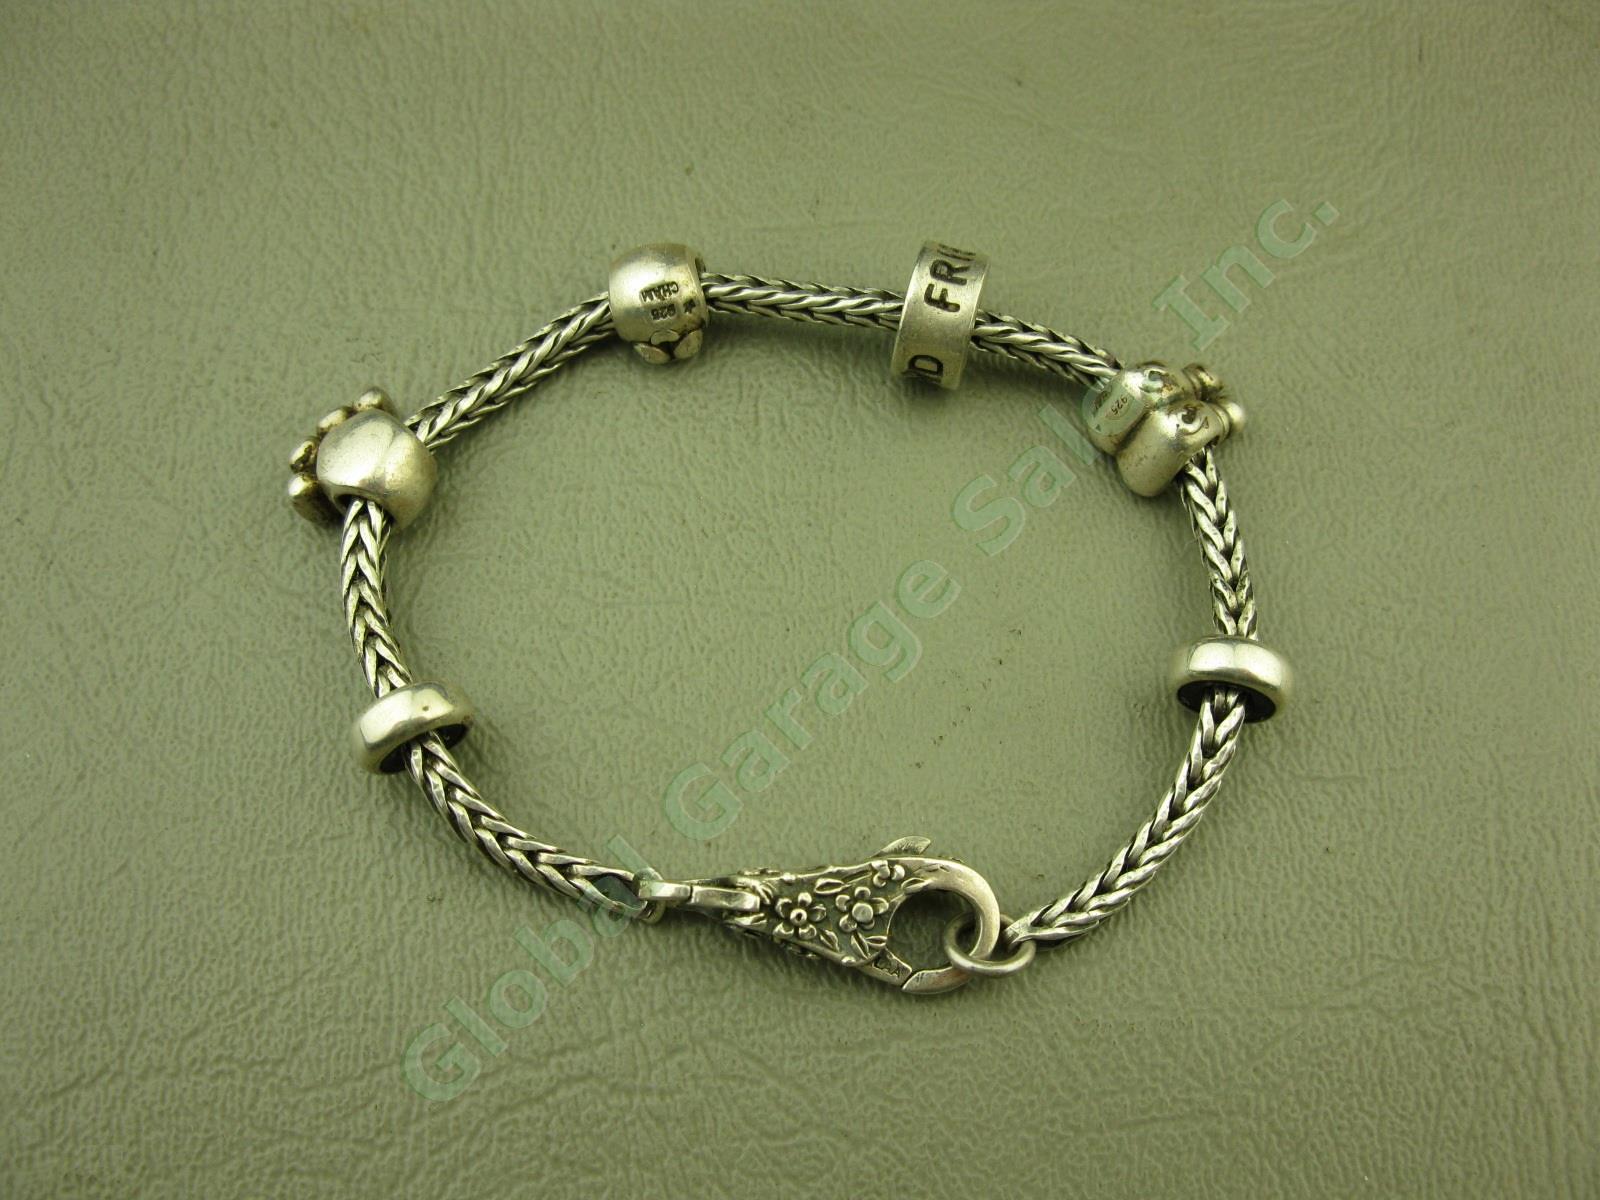 Trollbeads LAA 925 S Sterling Silver Bracelet Swan Lock Chamilia Charm Beads Lot